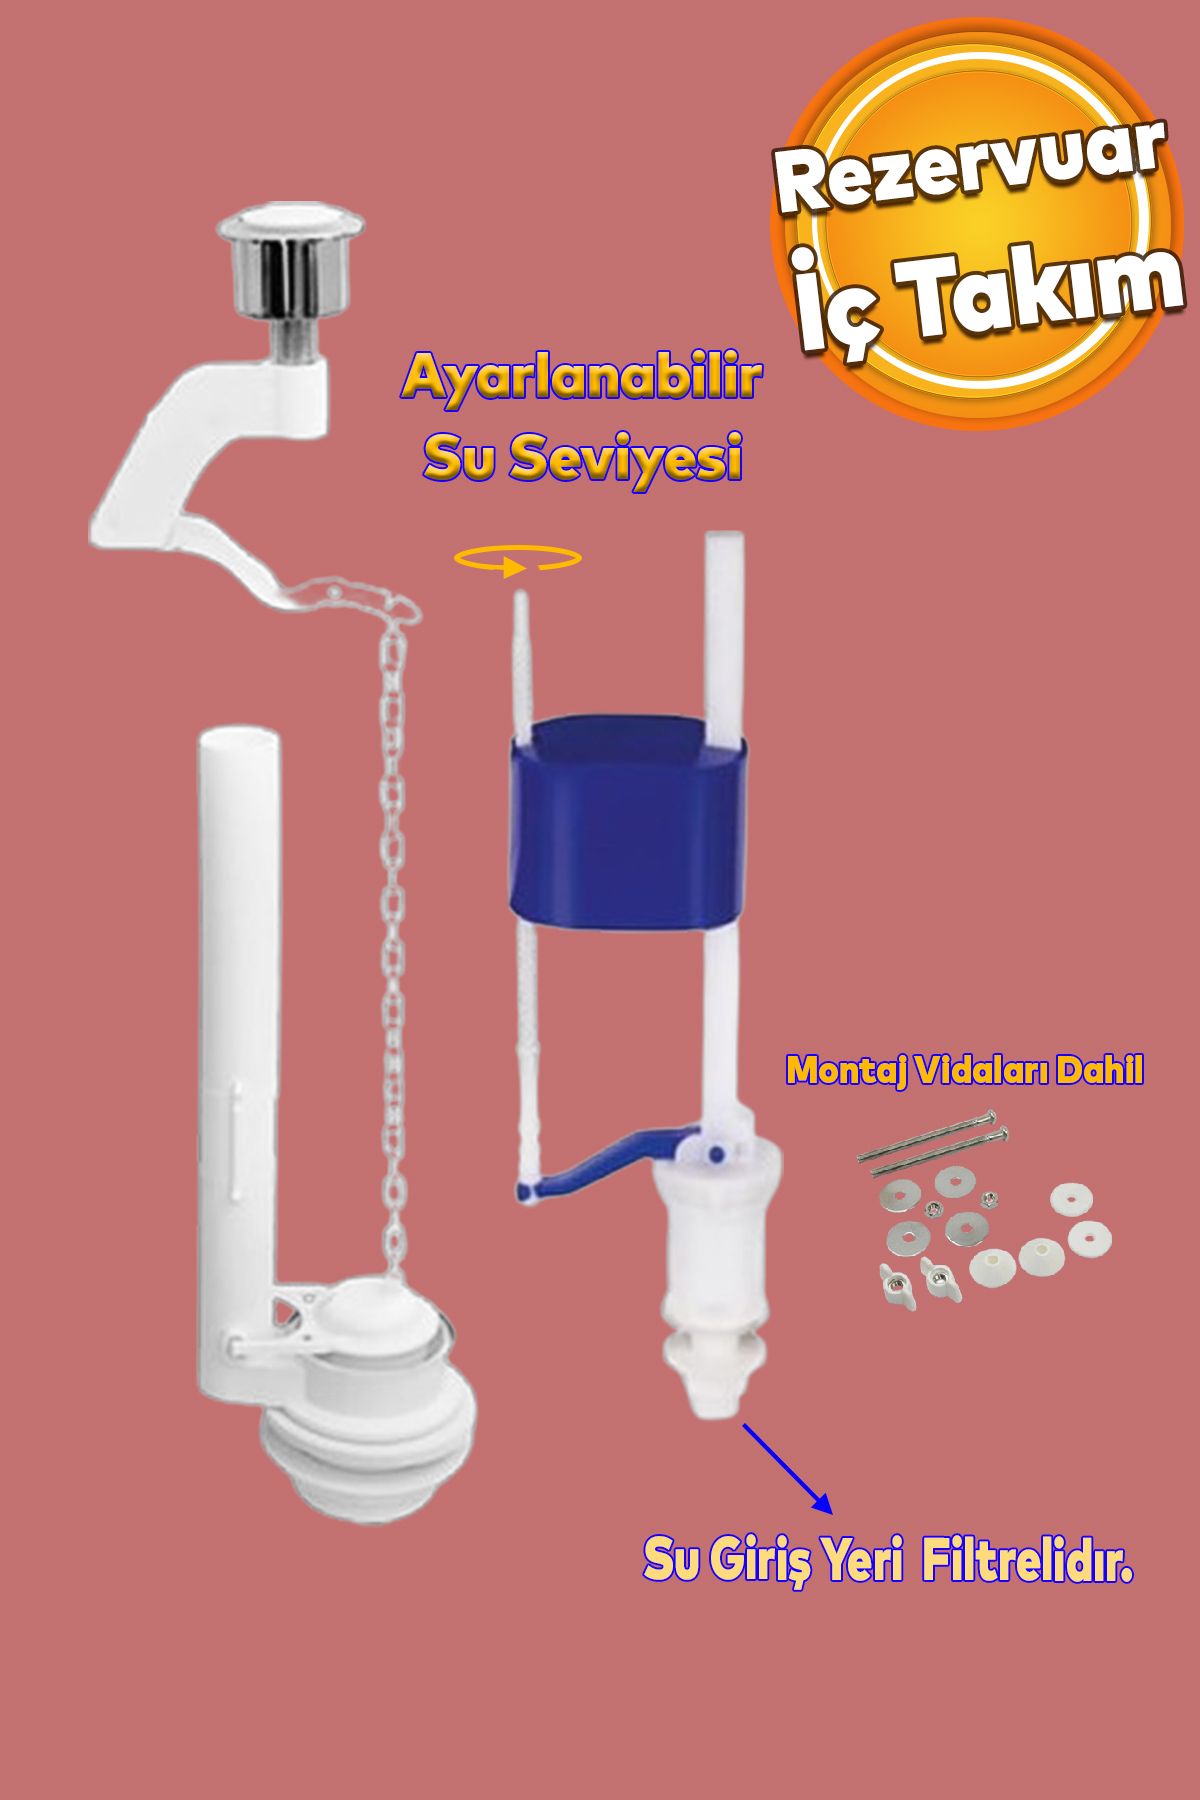 Badem10 Alafranga Oturmalı Tuvalet Klozet Sifon İç Düzenek Rezervuar Basmalı İç Takımı Otomatik Su Dolum